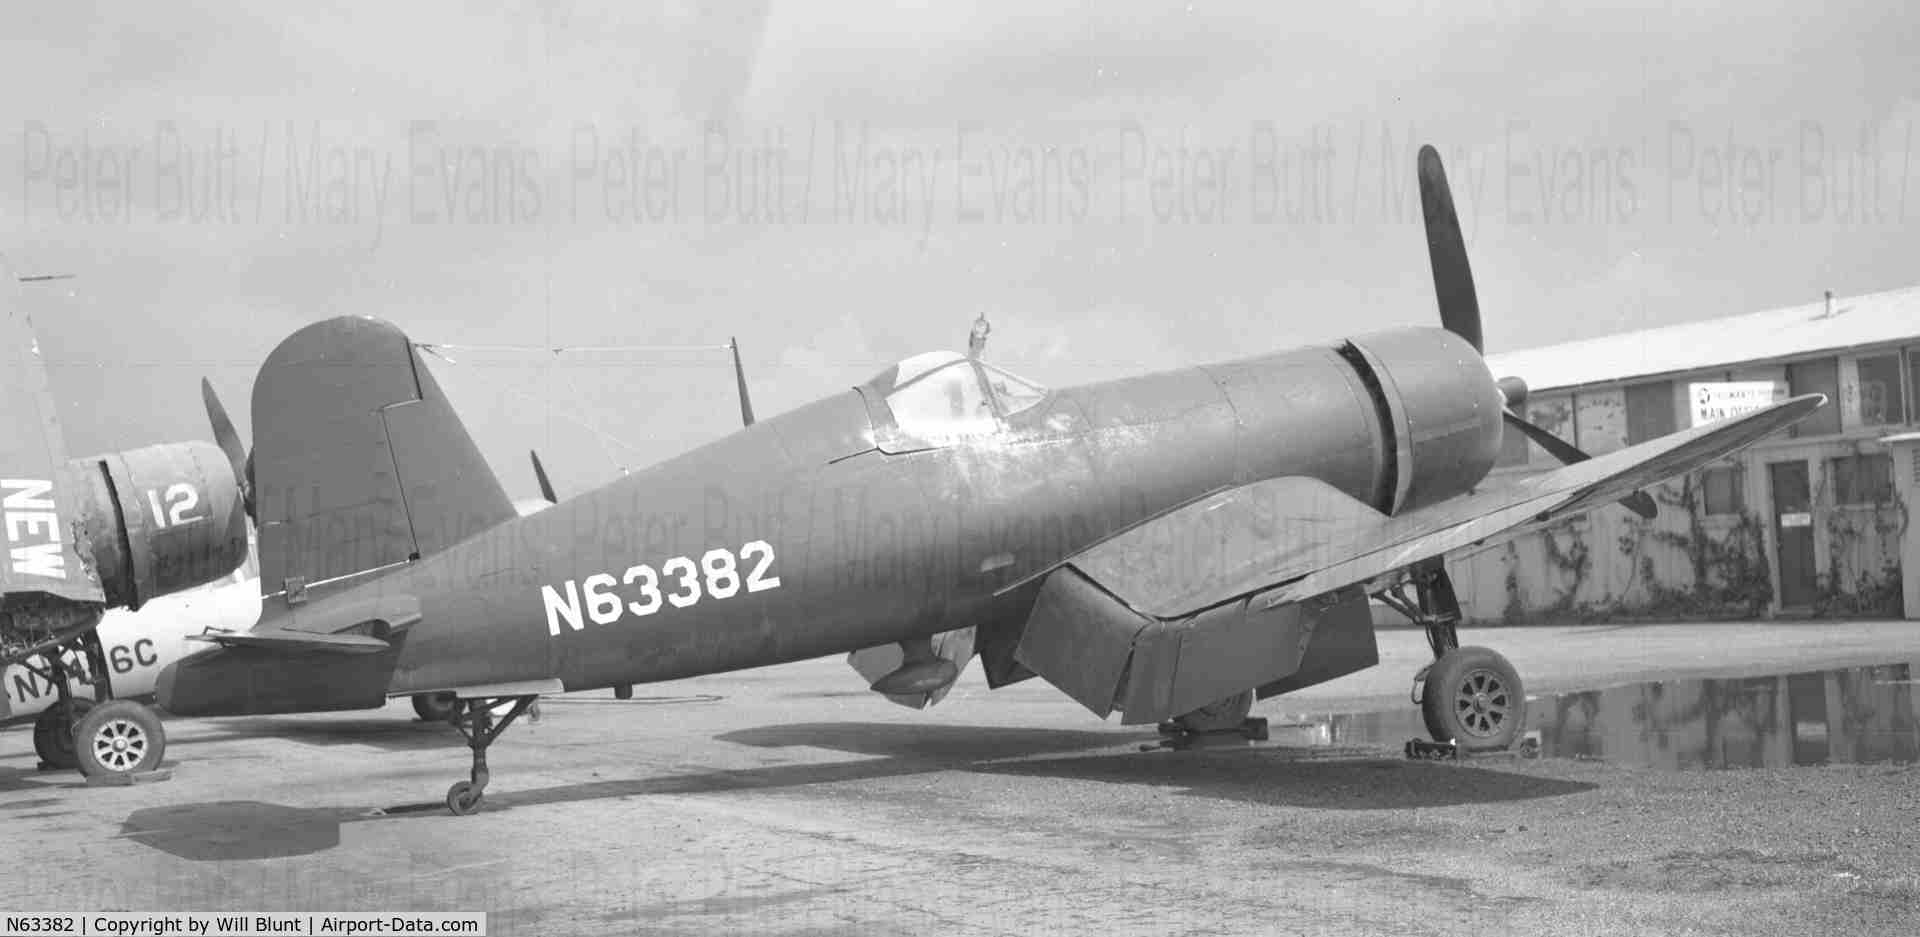 N63382, 1945 Goodyear FG-1D Corsair C/N 2900, 1960s